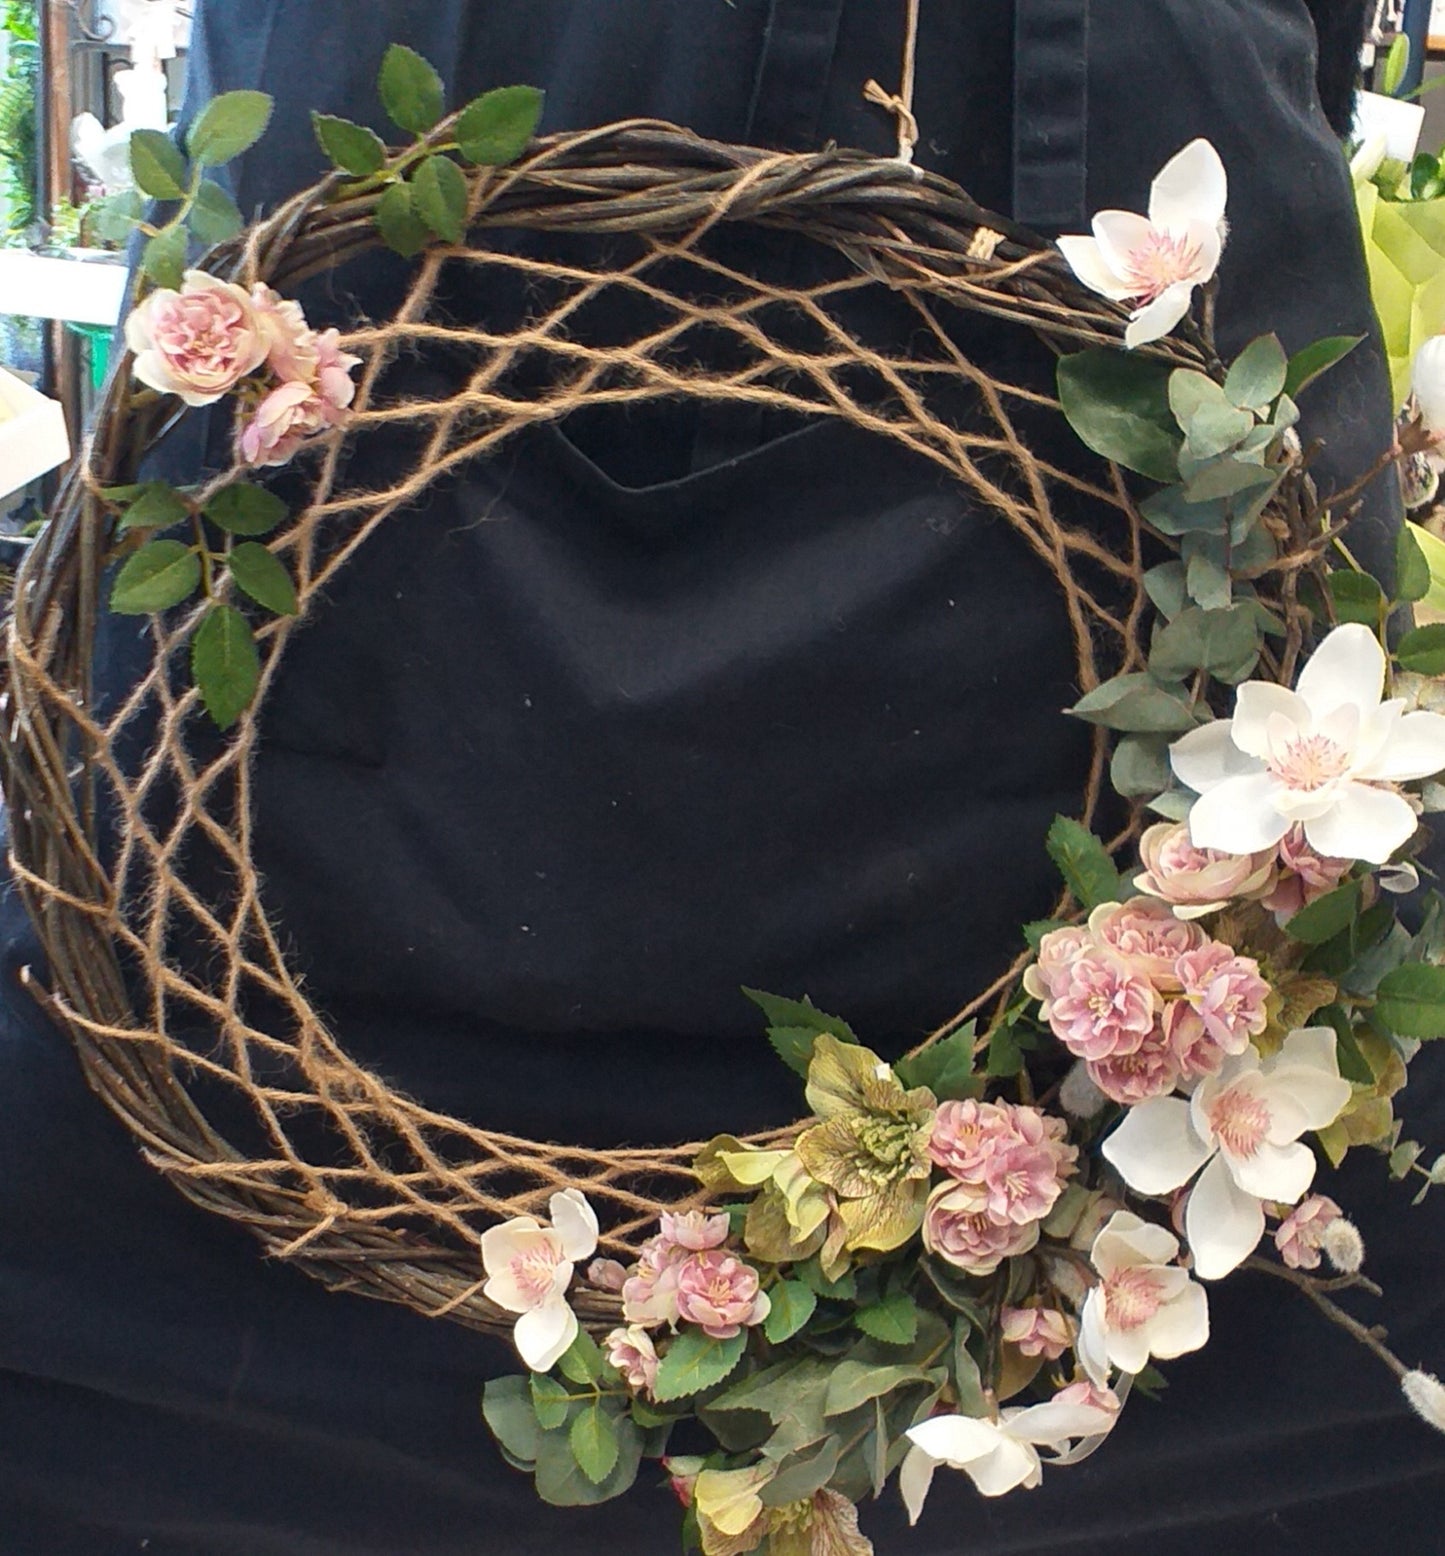 Wreath, Silk flowers, in Dream Catcher Style - Broadfield Flowers Florist Lincoln